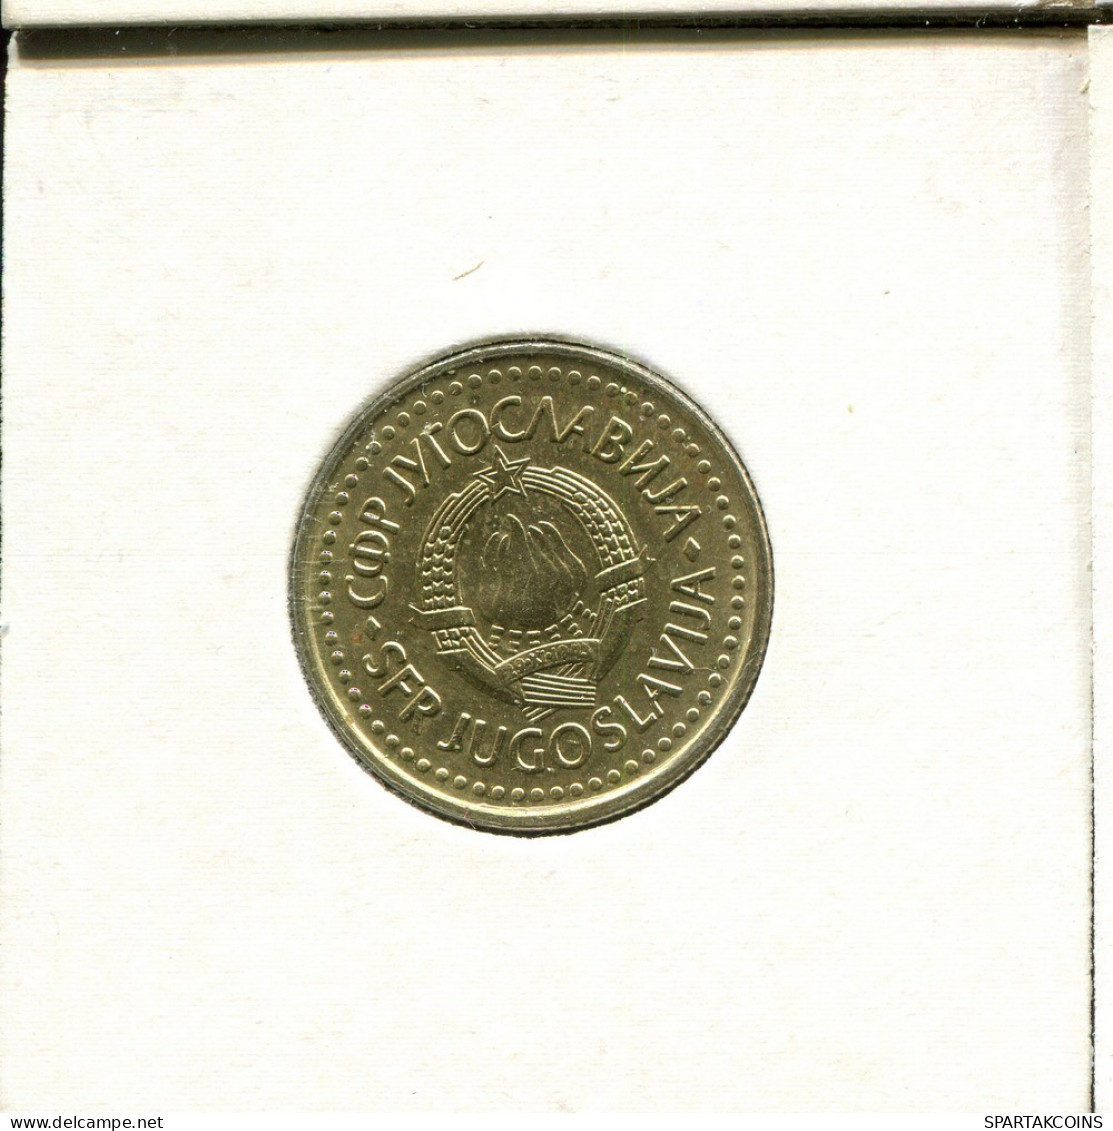 2 DINARA 1986 YUGOSLAVIA Coin #AV148.U.A - Joegoslavië